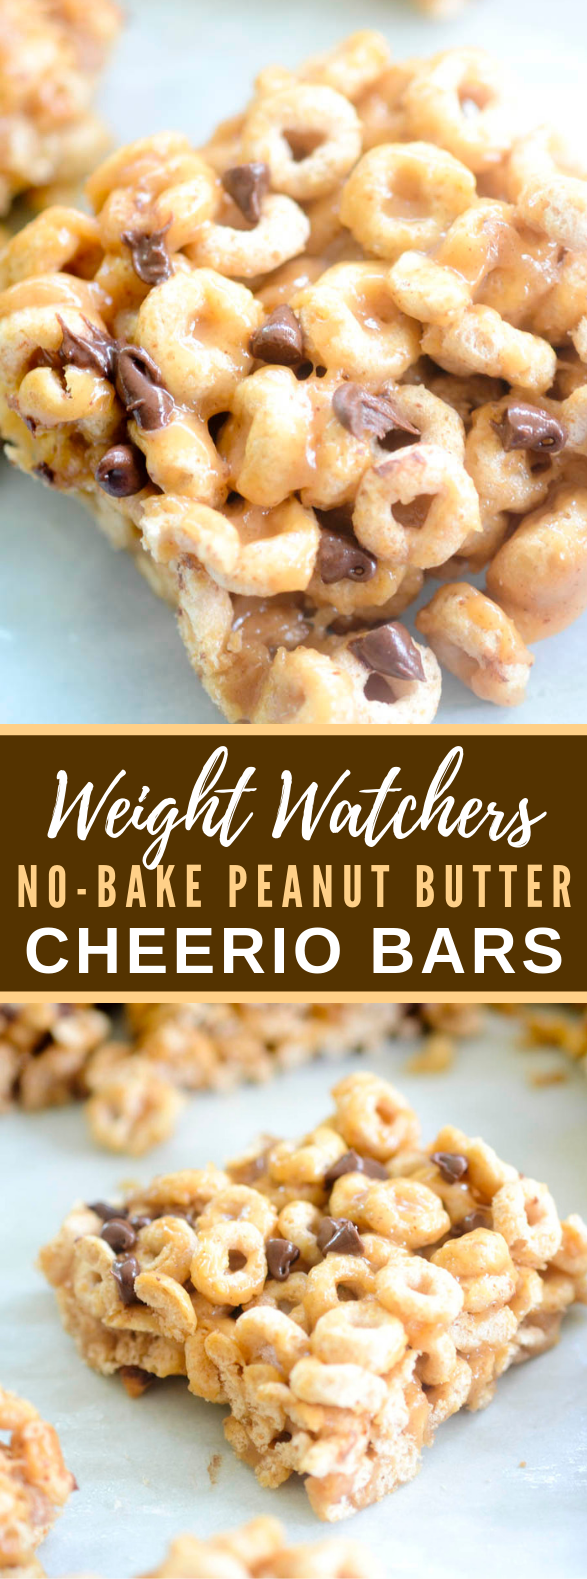 WEIGHT WATCHERS NO-BAKE PEANUT BUTTER CHEERIO BARS #healthy #diet